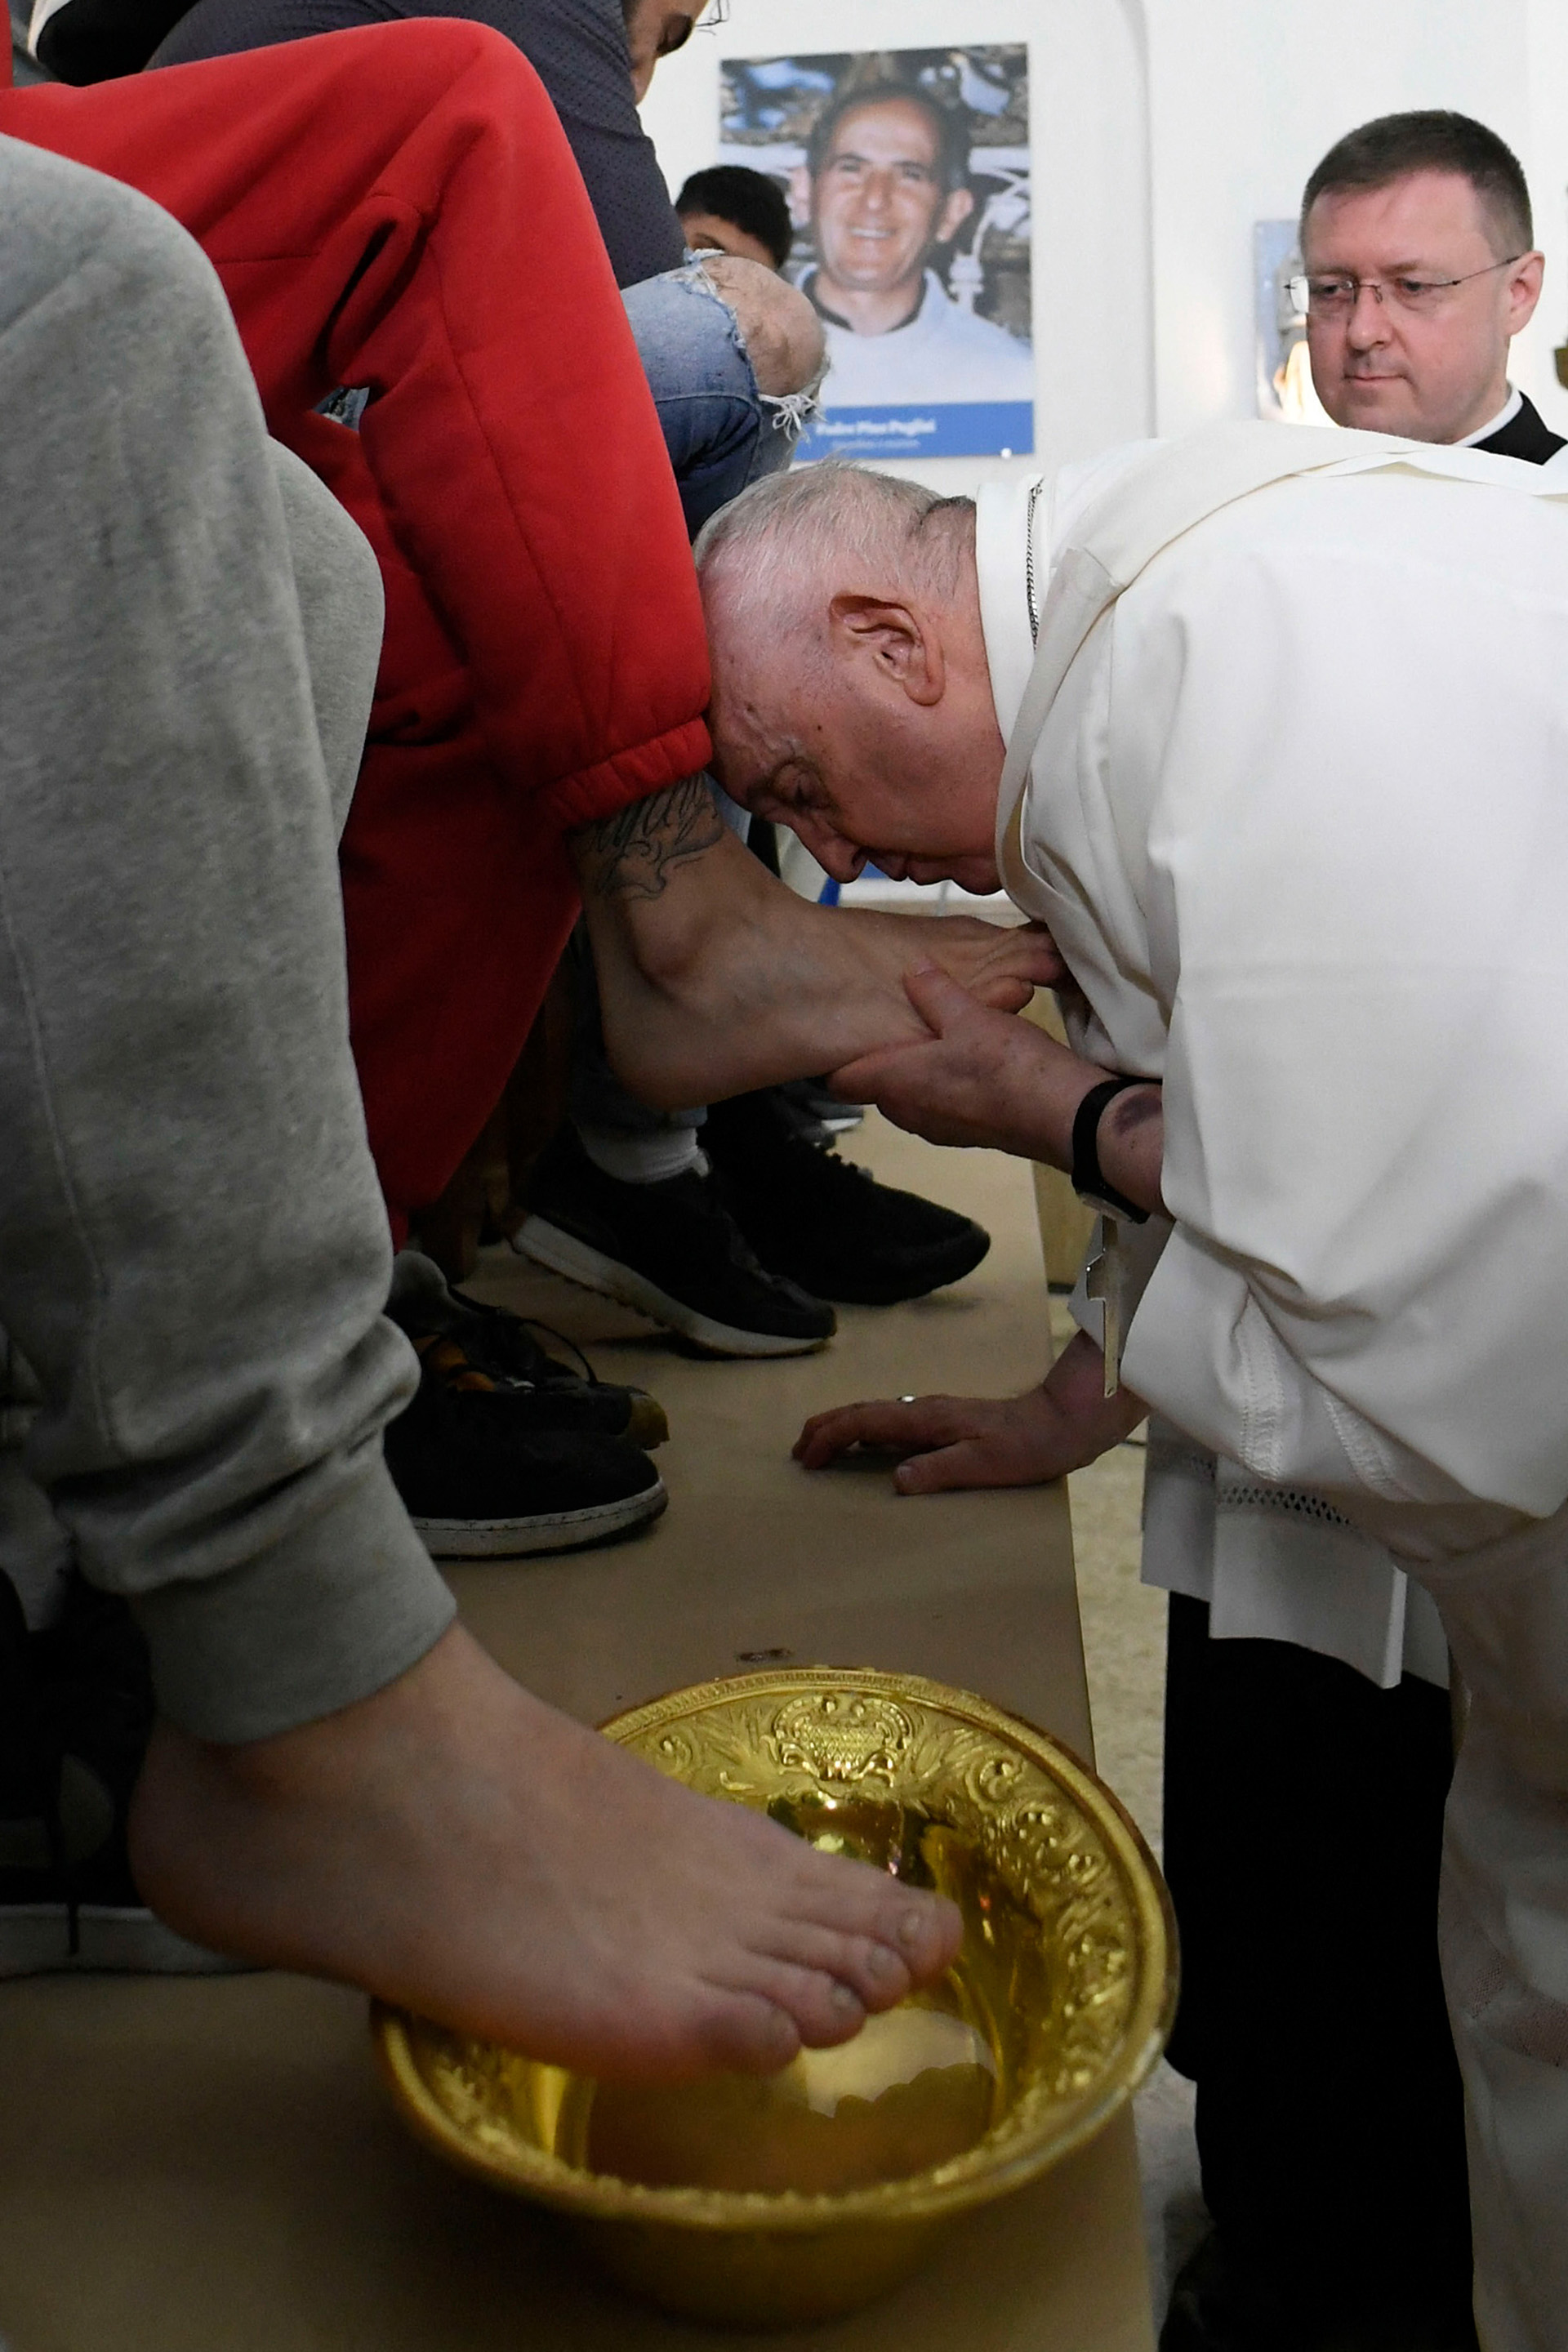 “Con este gesto, Jesús nos recuerda cómo debemos ayudarnos unos a otros”, dijo el Papa